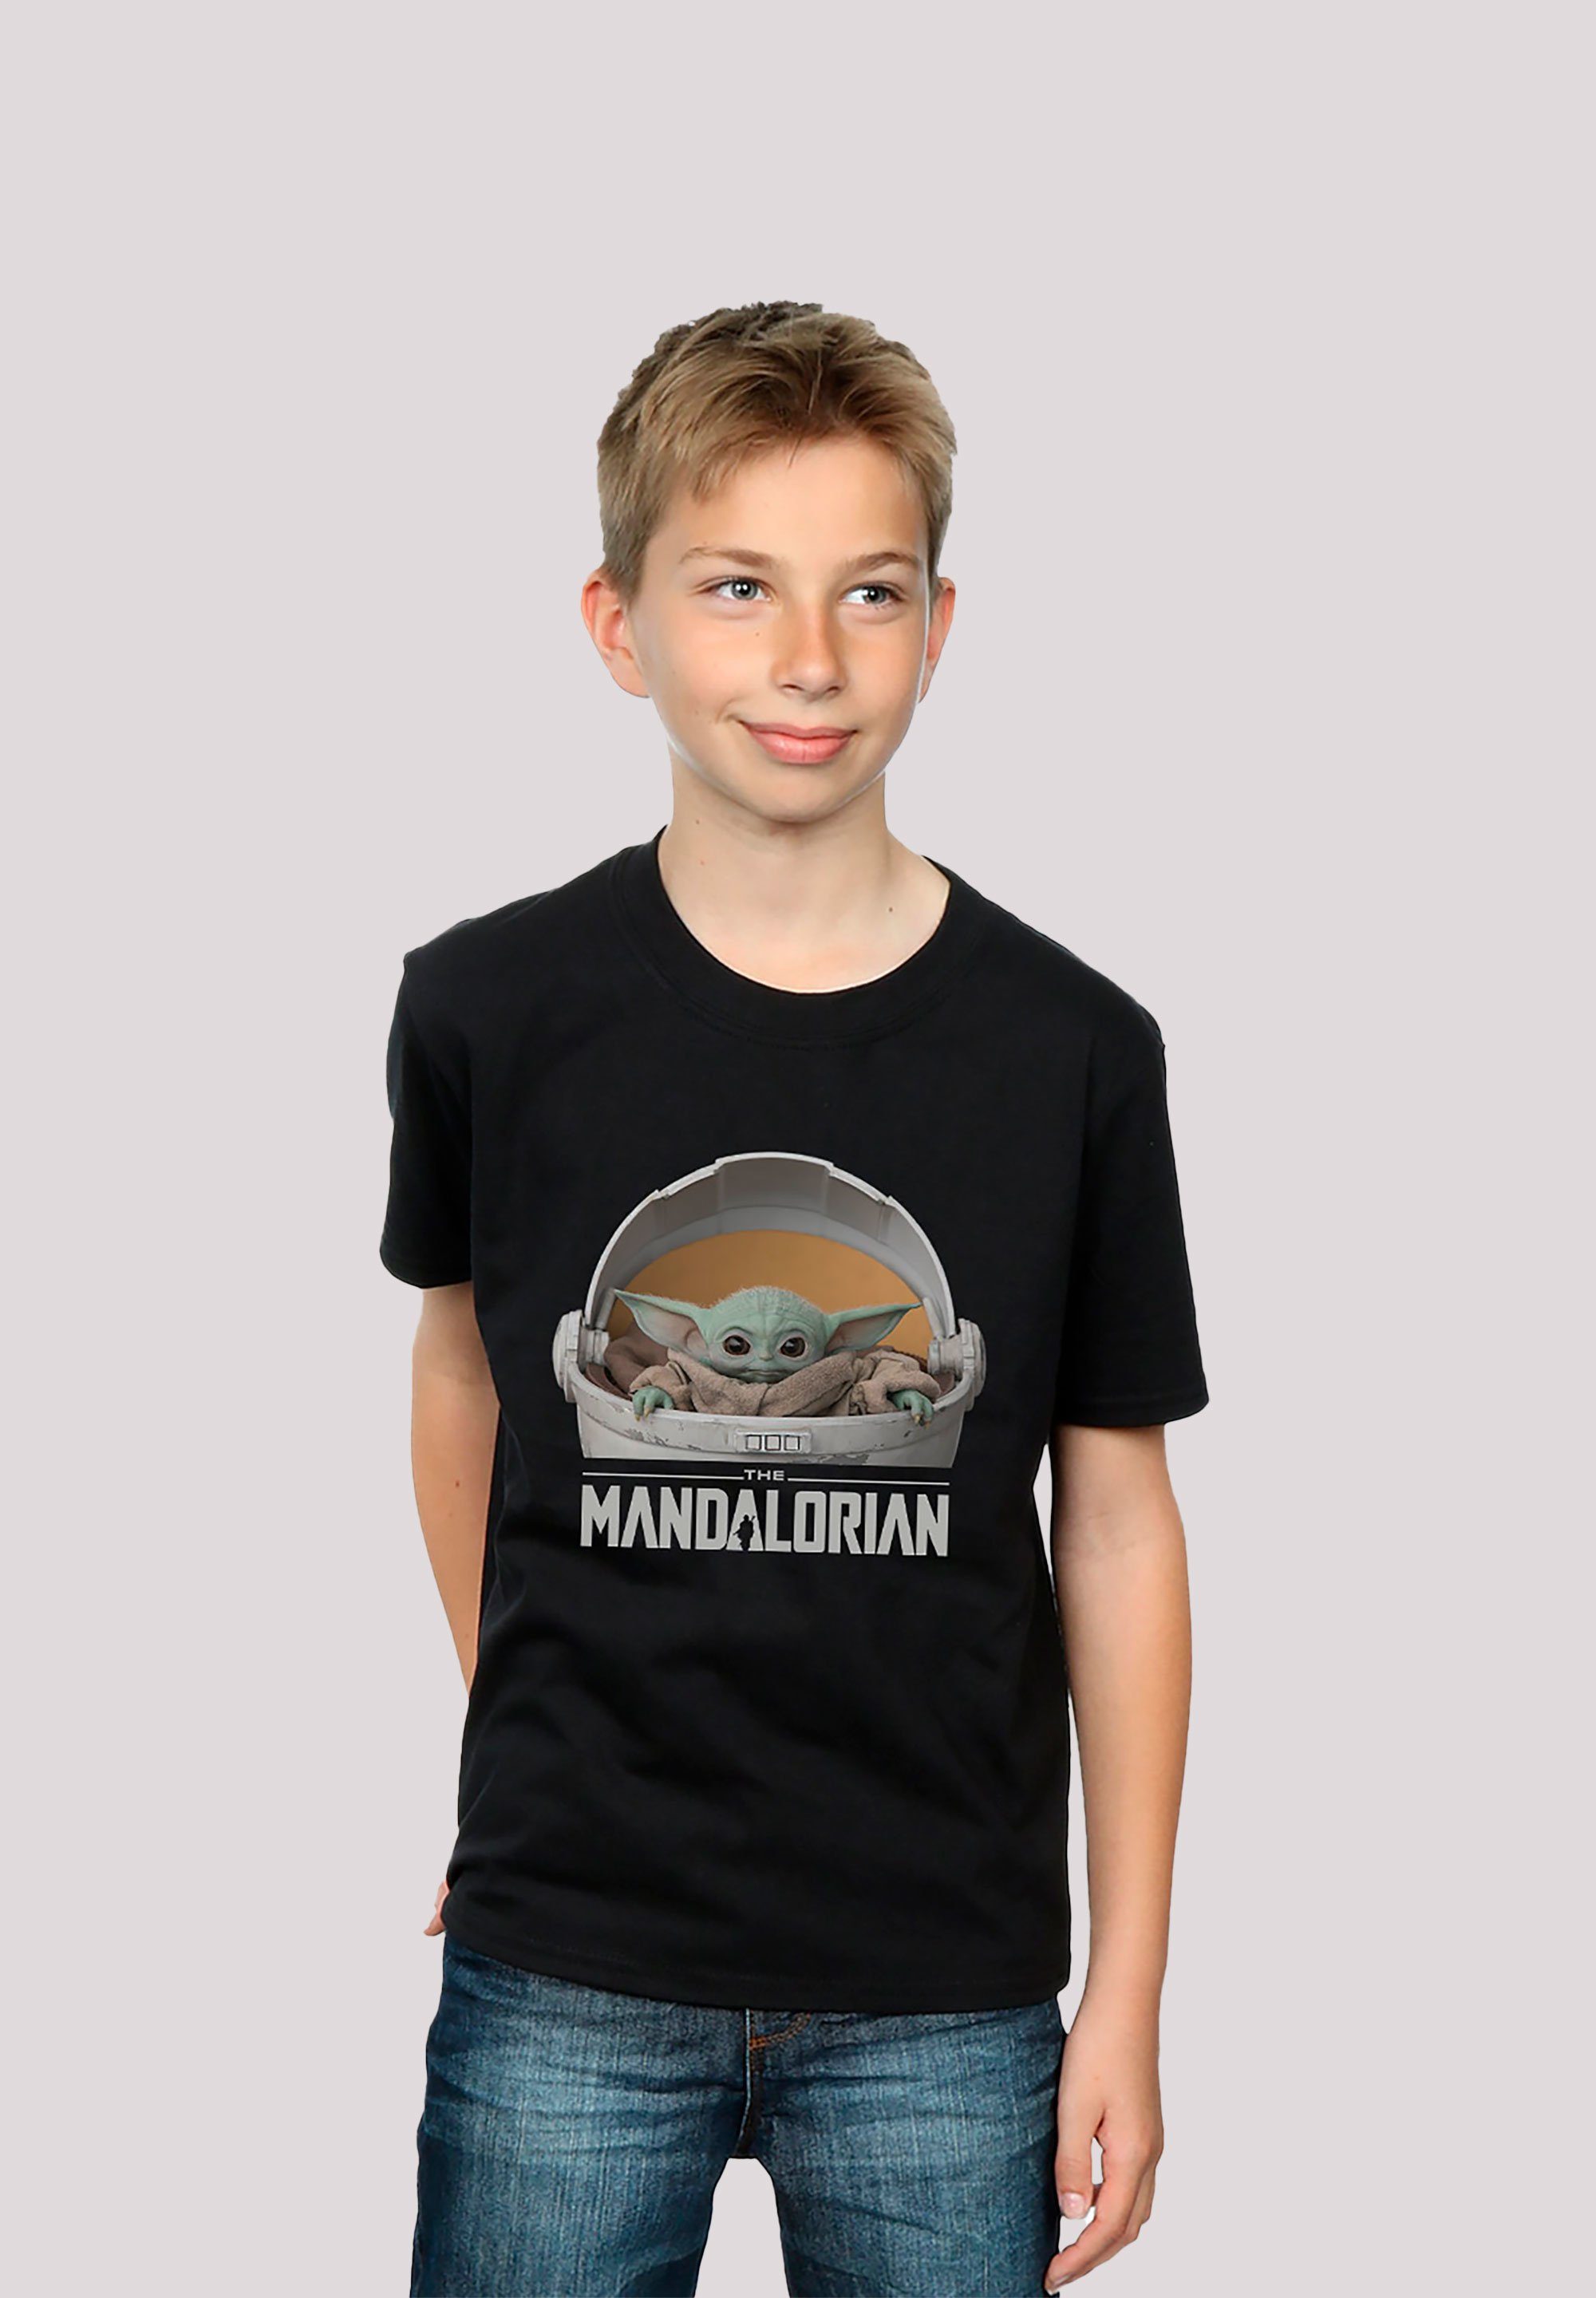 F4NT4STIC T-Shirt Star Wars The Mandalorian Baby Yoda Print, Star Wars The  Mandalorian The Child Pod